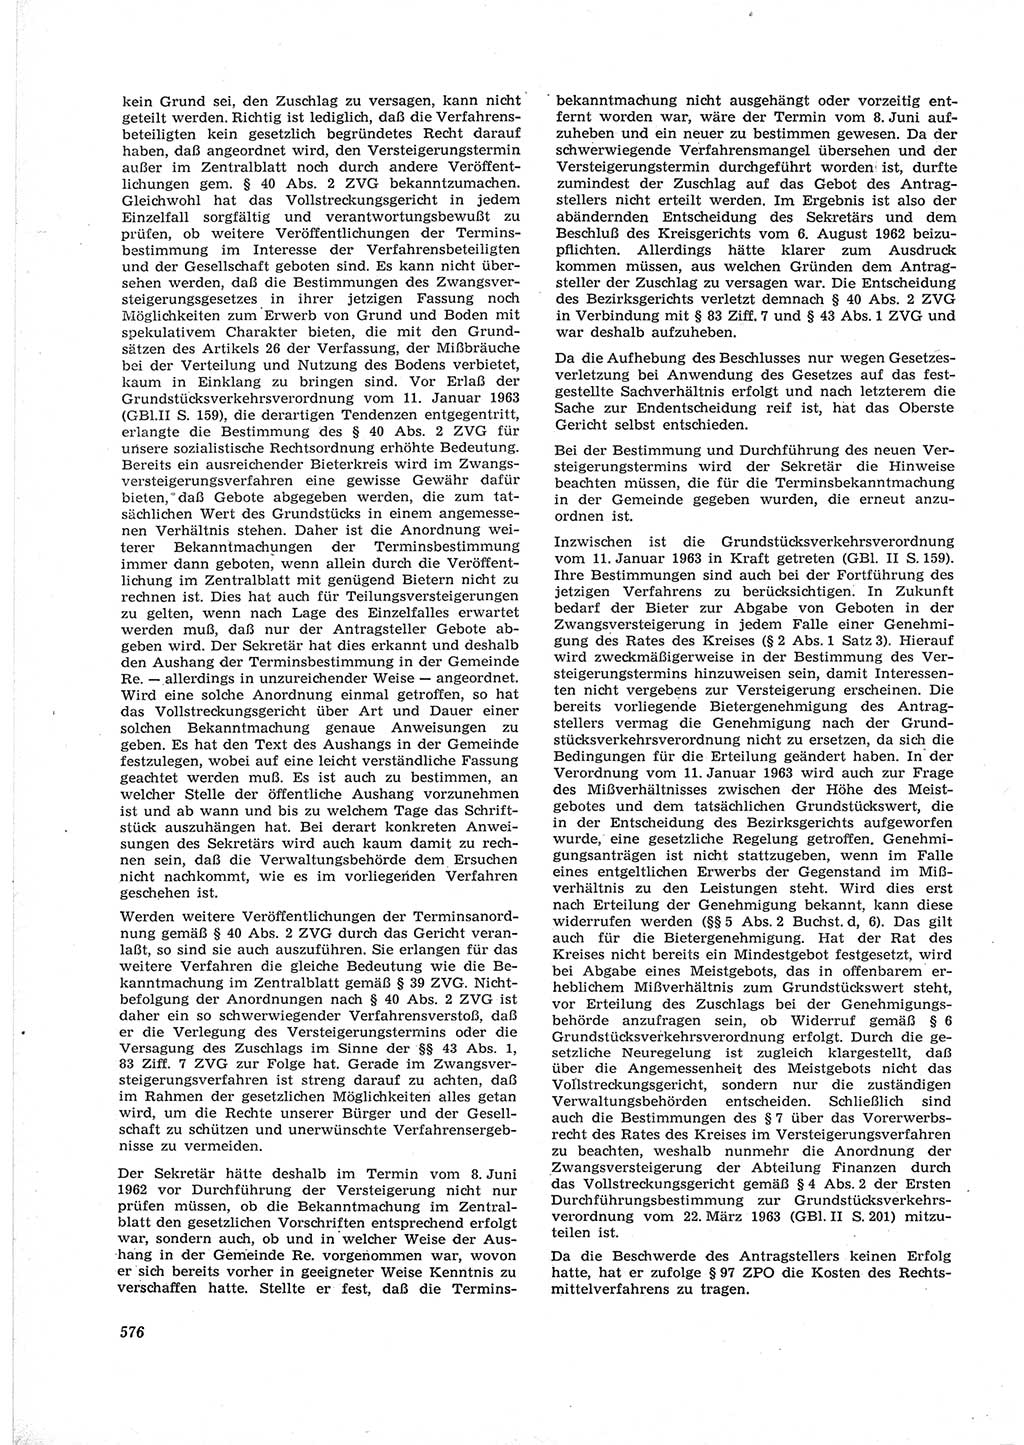 Neue Justiz (NJ), Zeitschrift für Recht und Rechtswissenschaft [Deutsche Demokratische Republik (DDR)], 17. Jahrgang 1963, Seite 576 (NJ DDR 1963, S. 576)